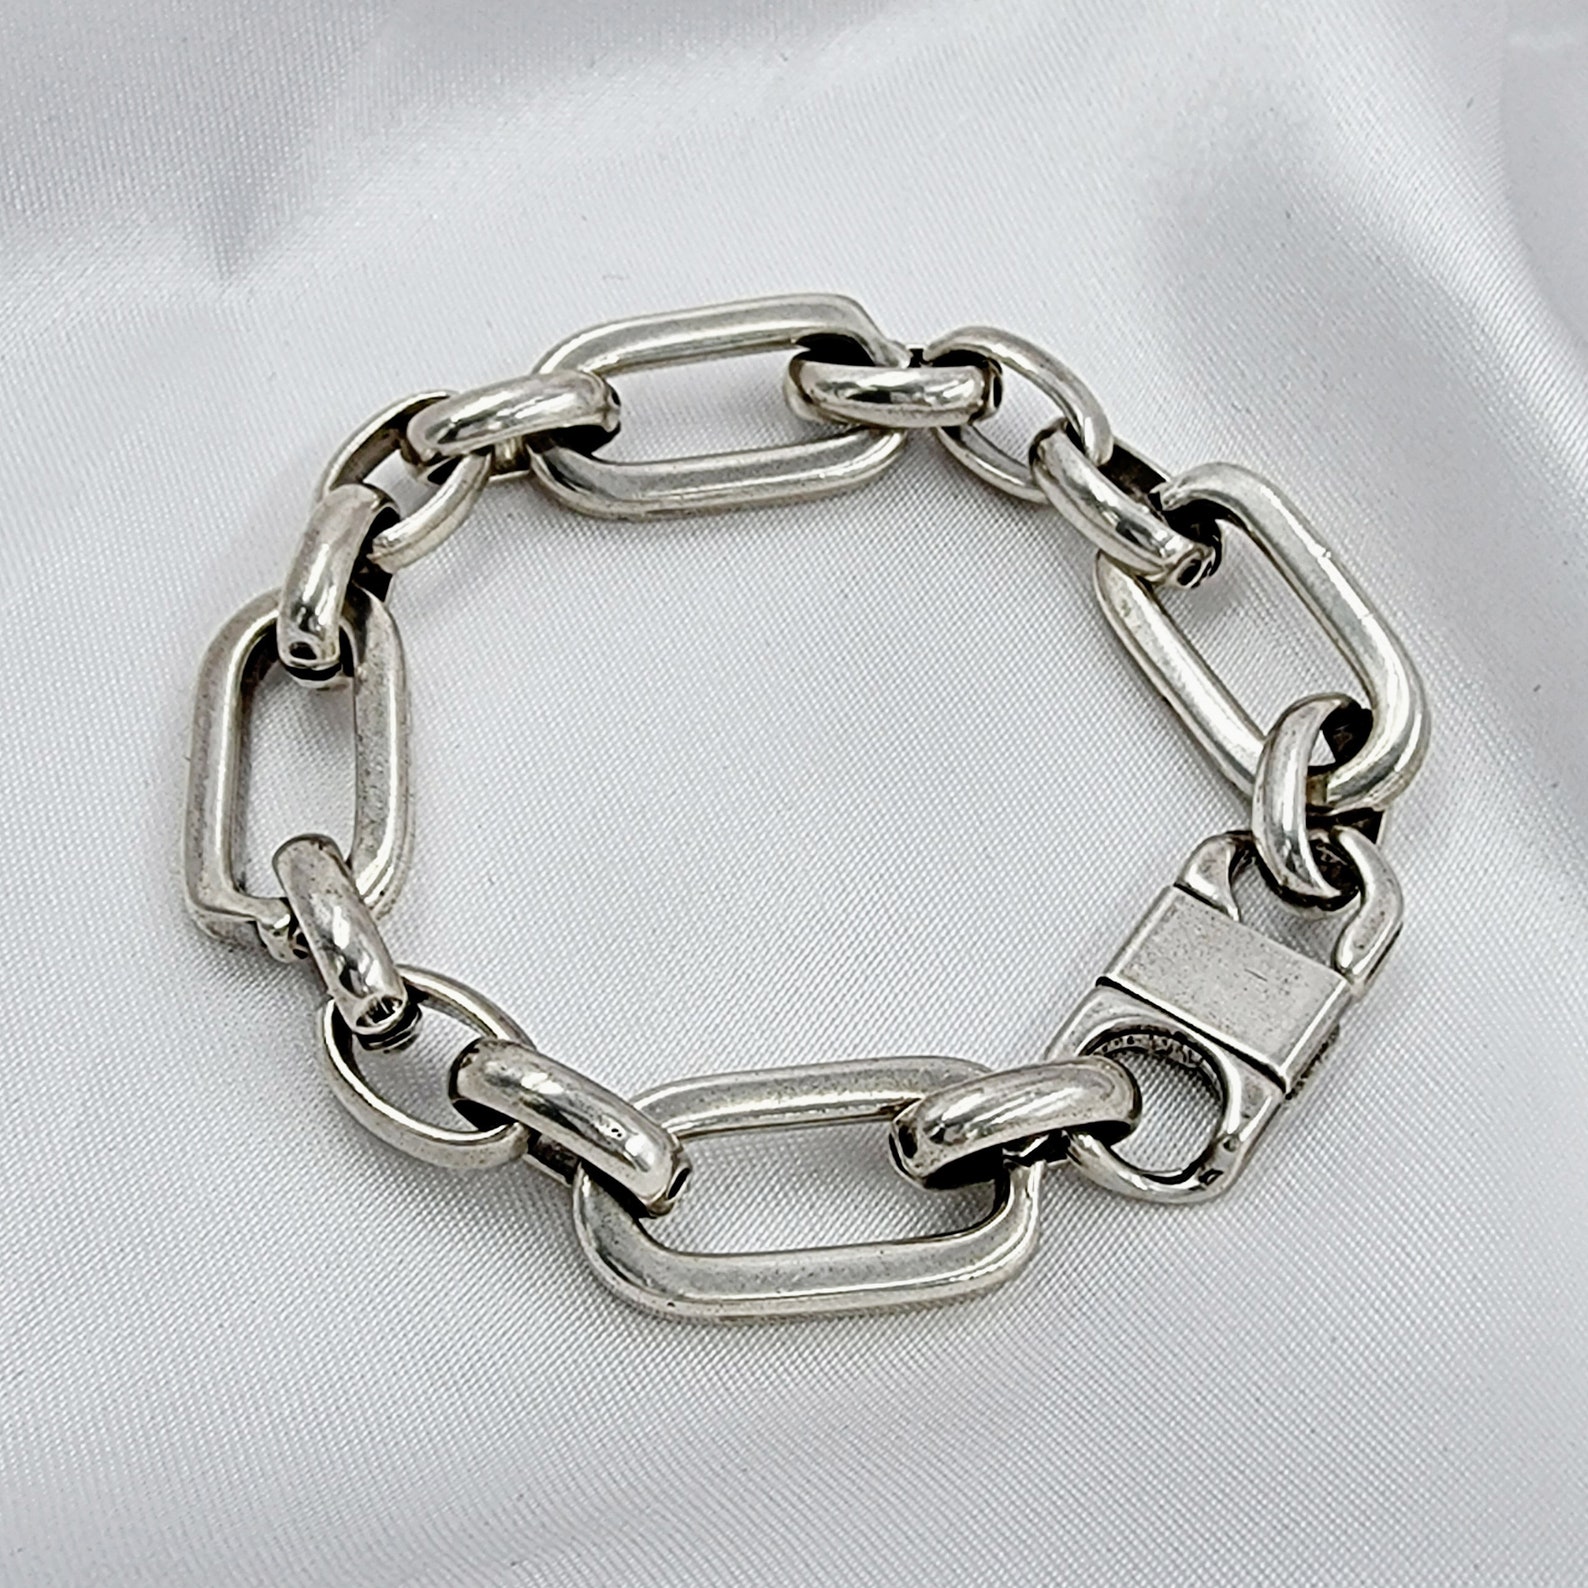 Silver Chunky Bracelet Silver Chain Bracelet Statement - Etsy